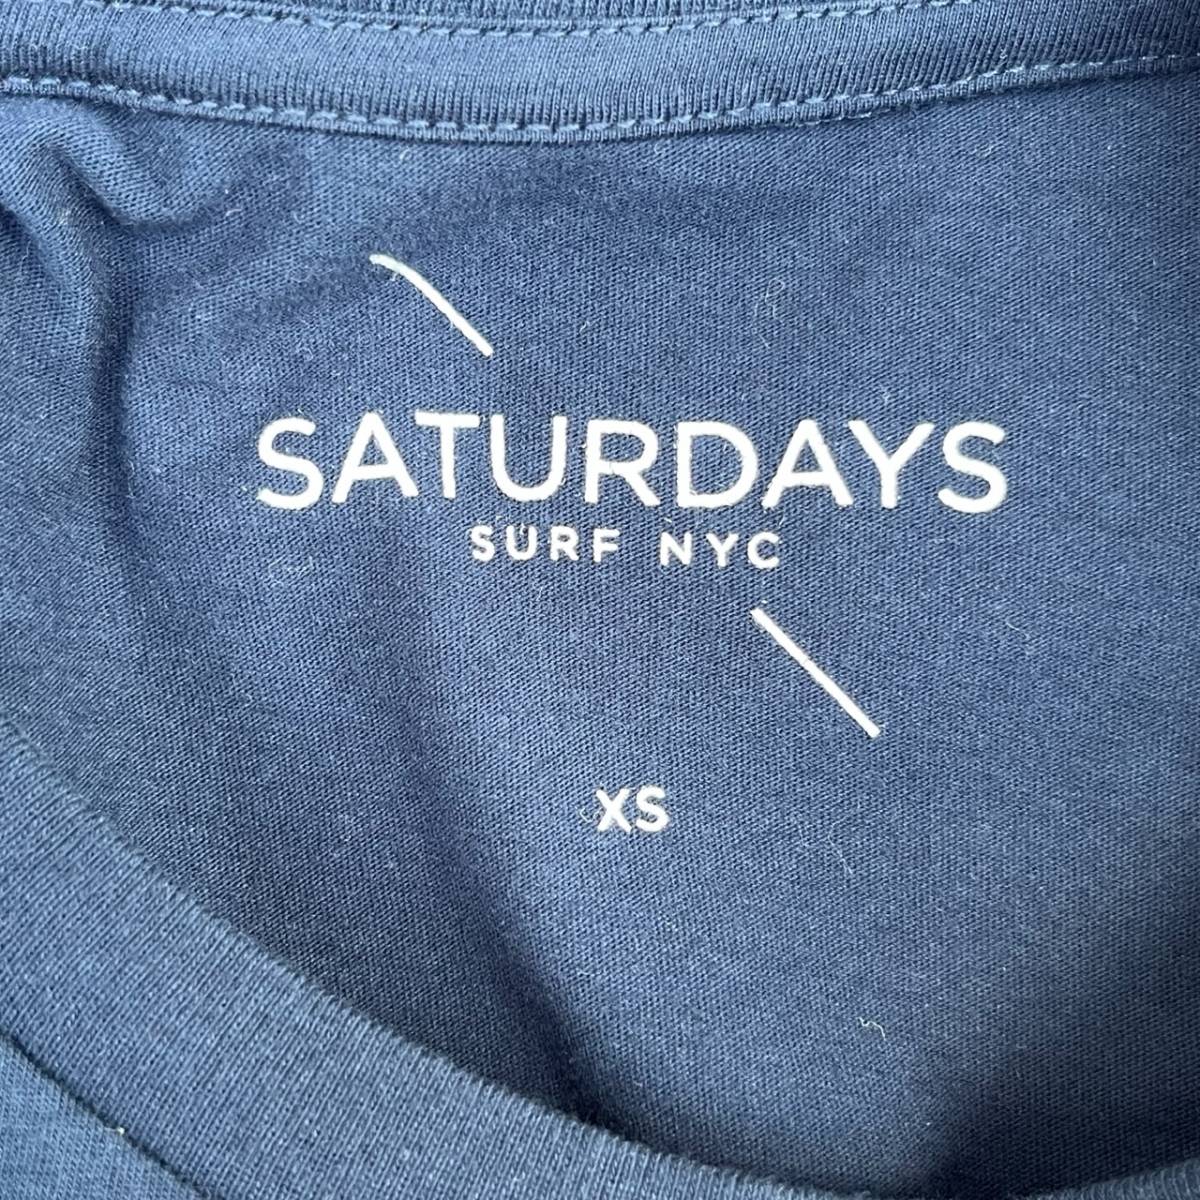 未使用品 SATURDAYS SURF NYC サタデーズサーフニューヨーク XSサイズ Tシャツ 半袖 プリント ネイビー